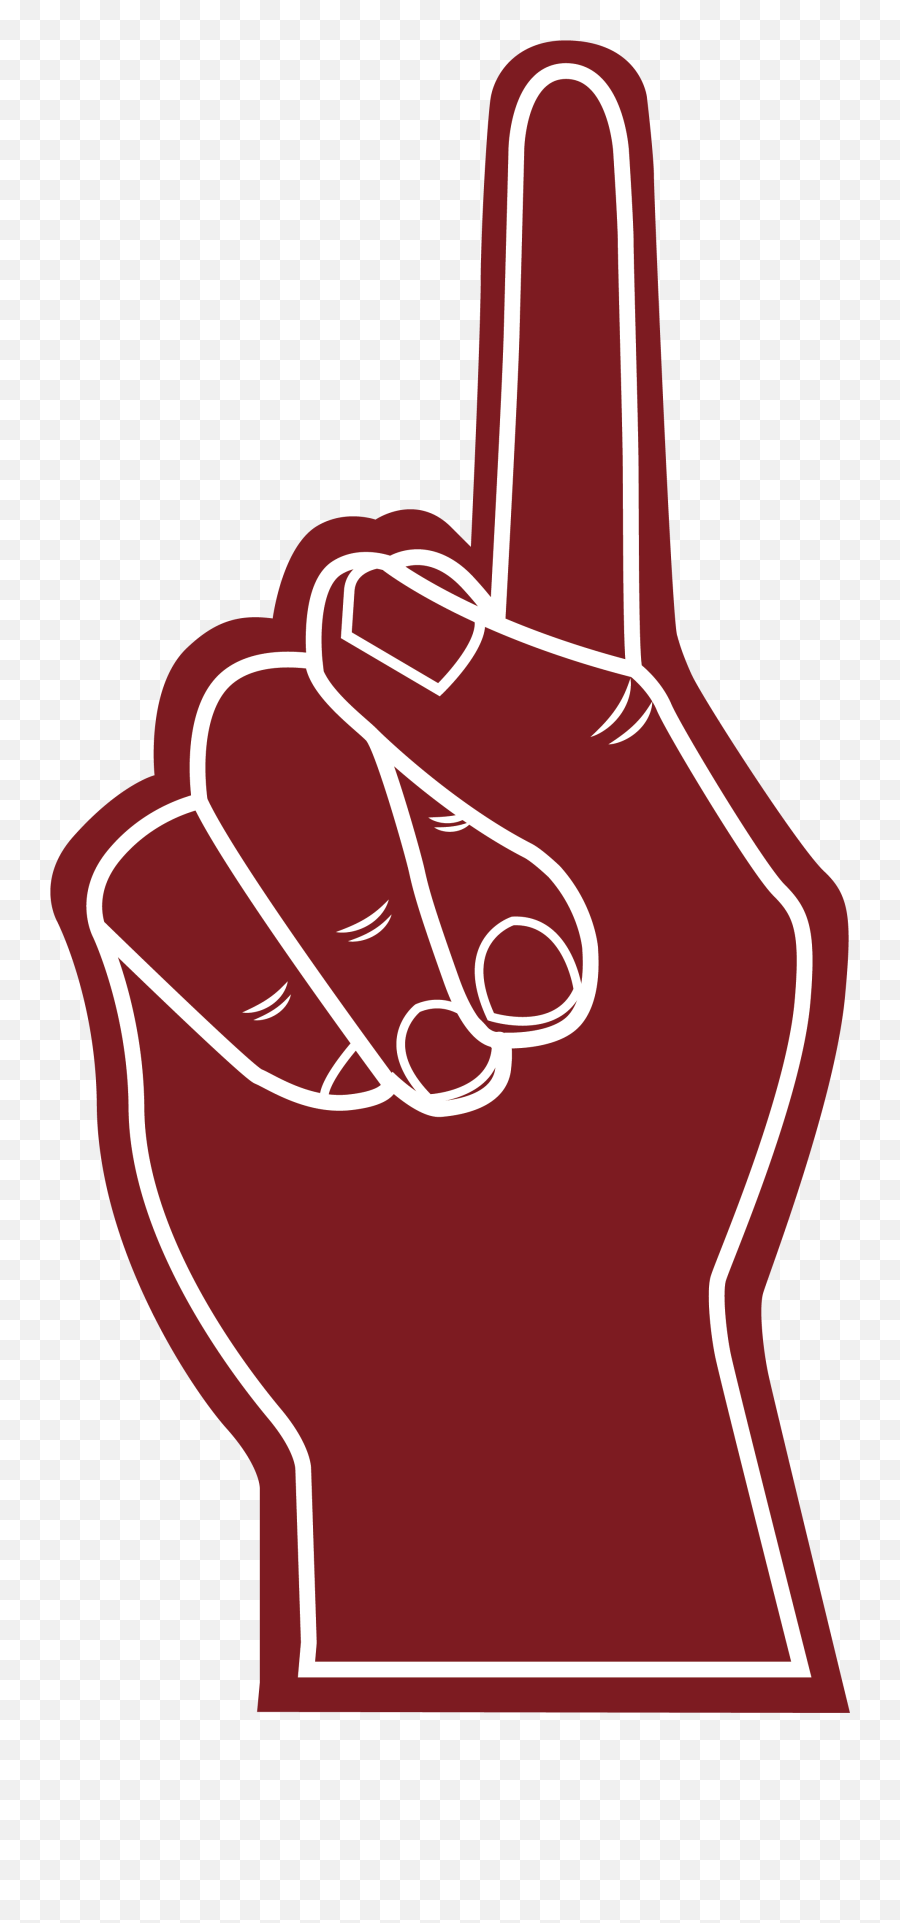 1 Finger - One Finger Up Png Vector Emoji,One Finger Emoji